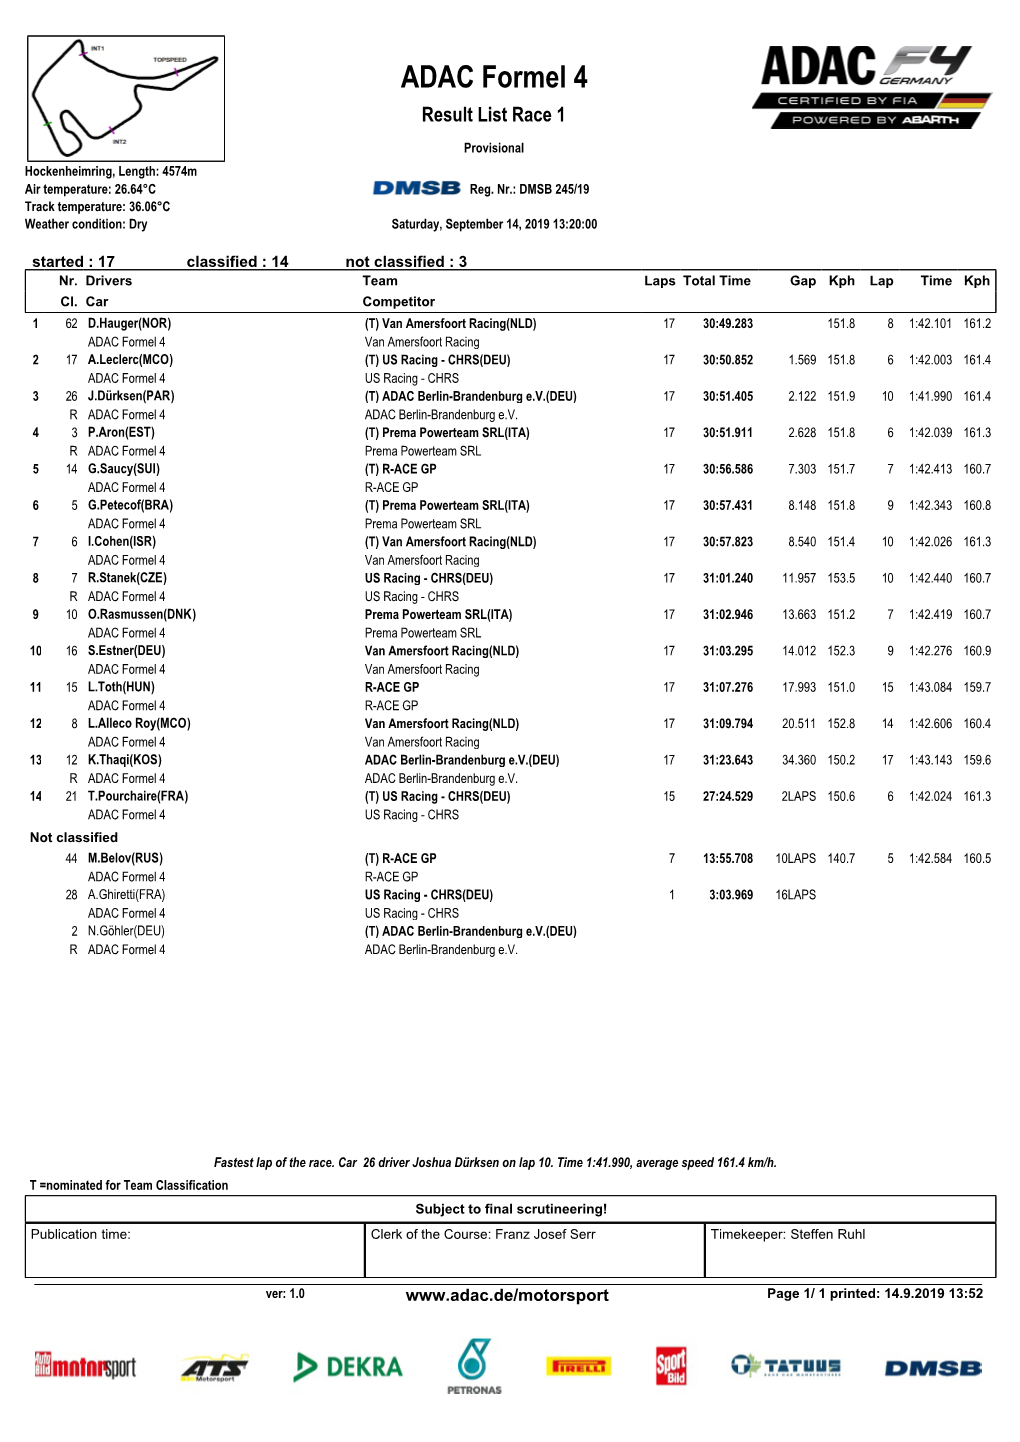 ADAC Formel 4 Result List Race 1